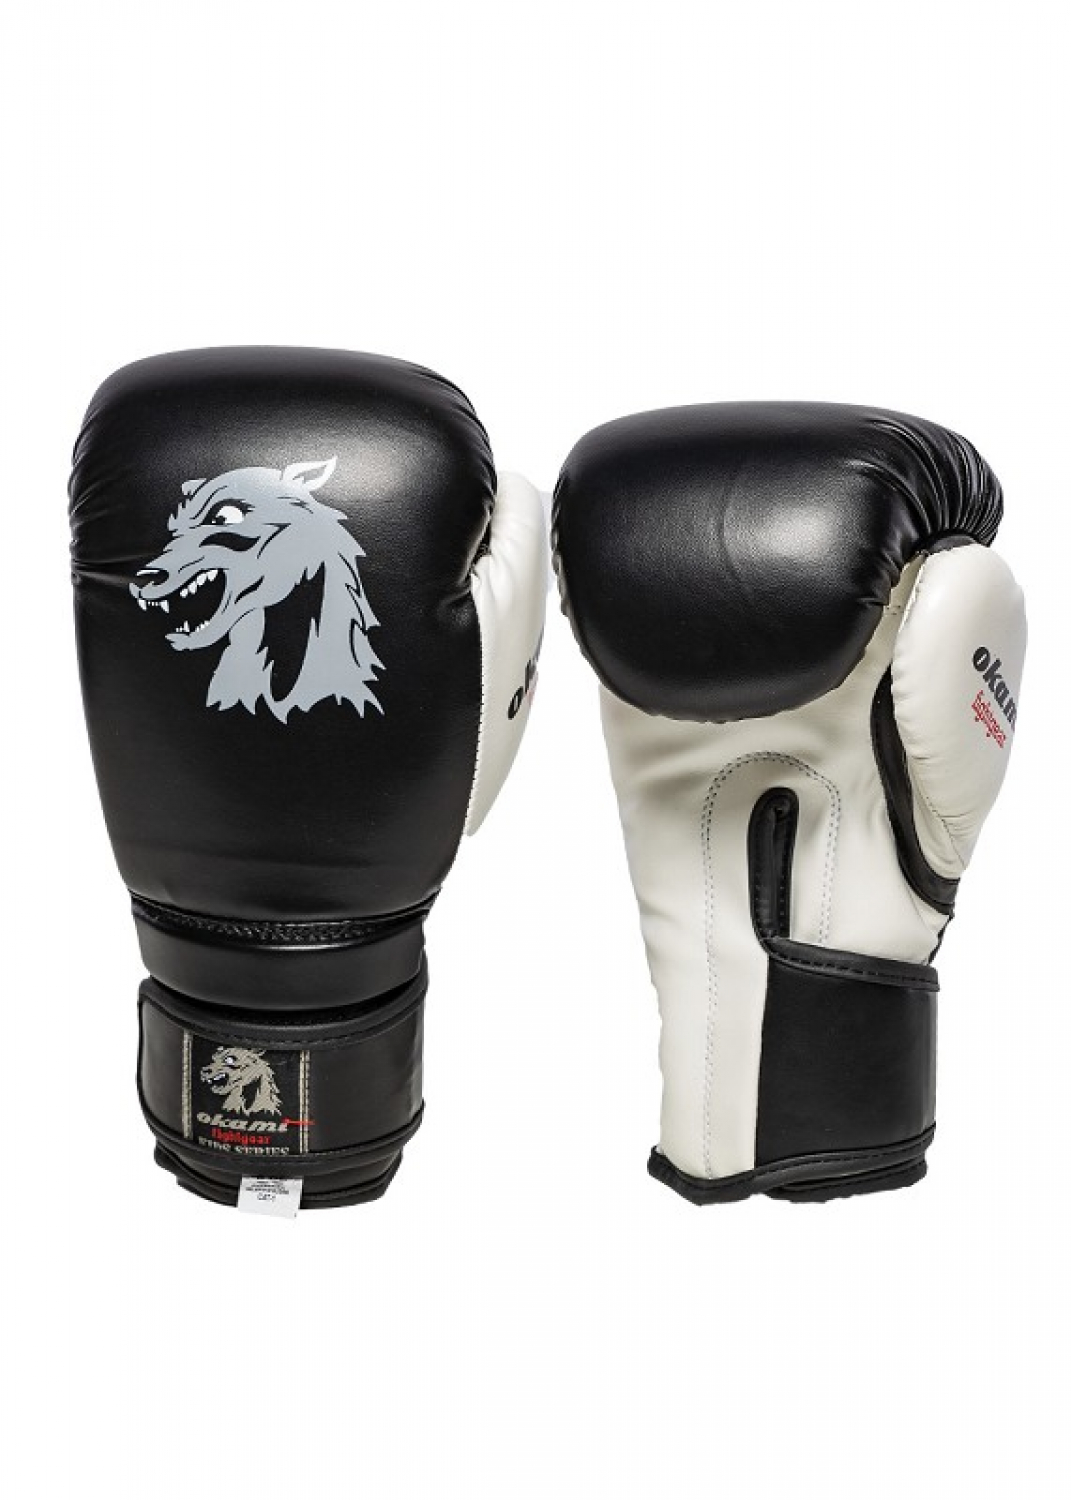 Okami Kids Boxing Gloves 6oz